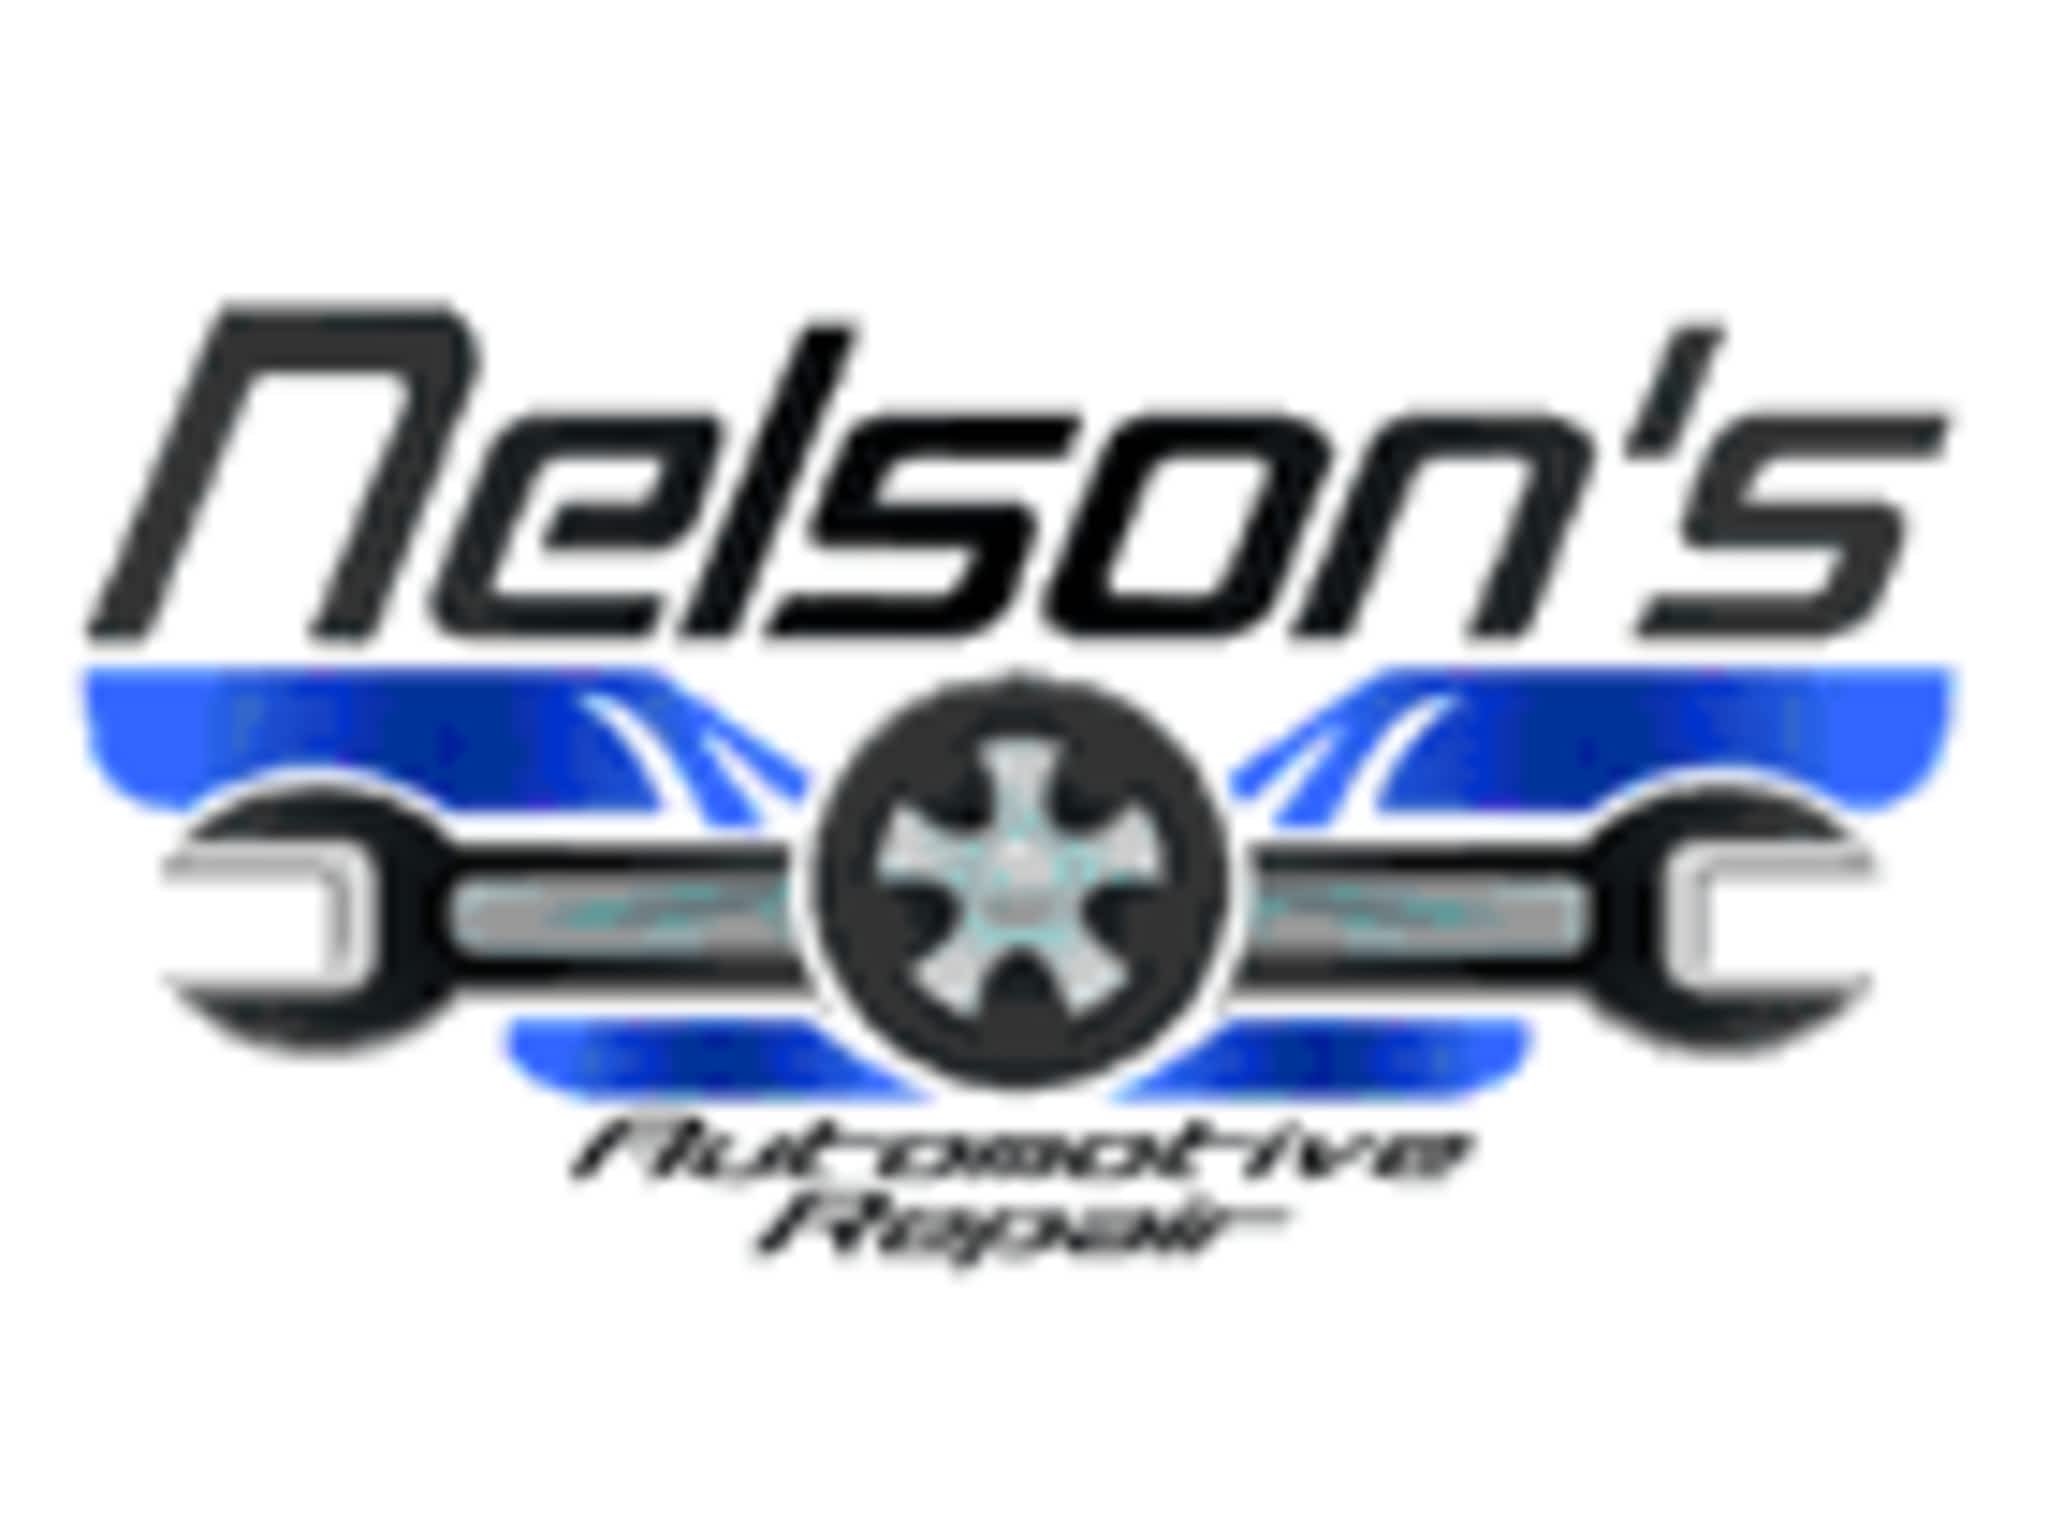 photo Nelson's Automotive Repair